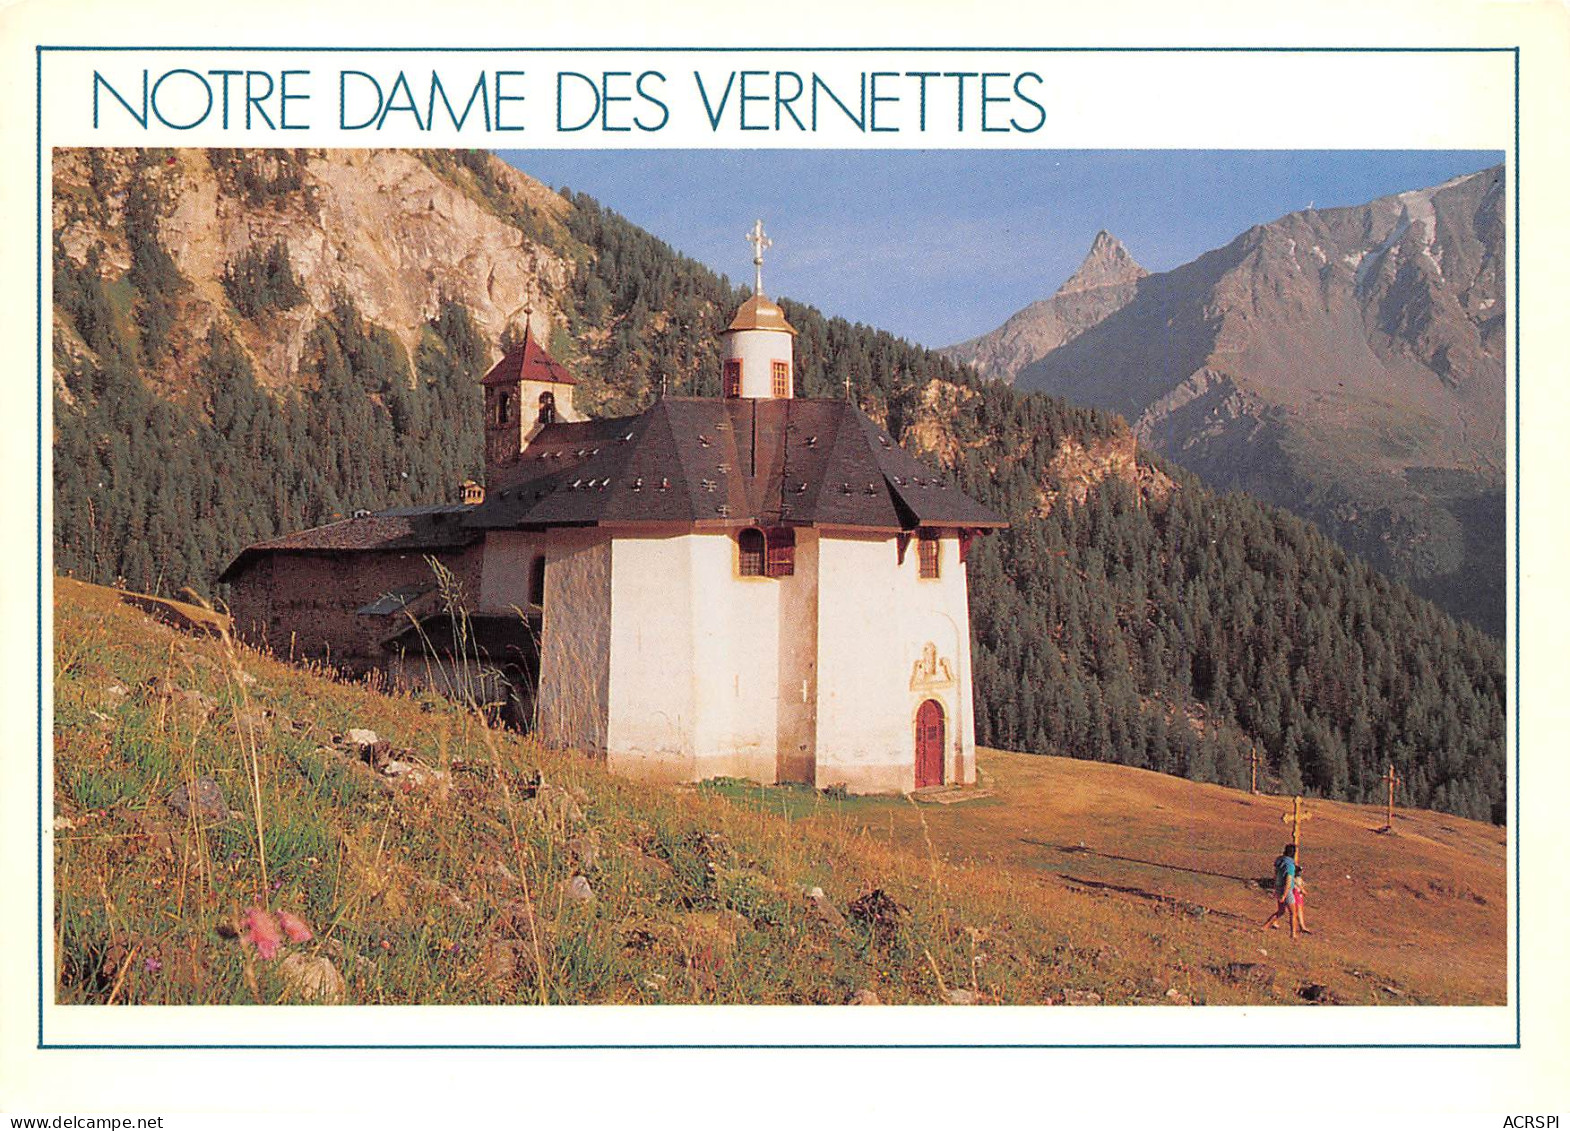  Sanctuaire De Notre-Dame Des Vernettes Peisey-Nancroix Plan Peisey, 73210 Landry  42 (scan Recto-verso)MA2295Vic - Pralognan-la-Vanoise